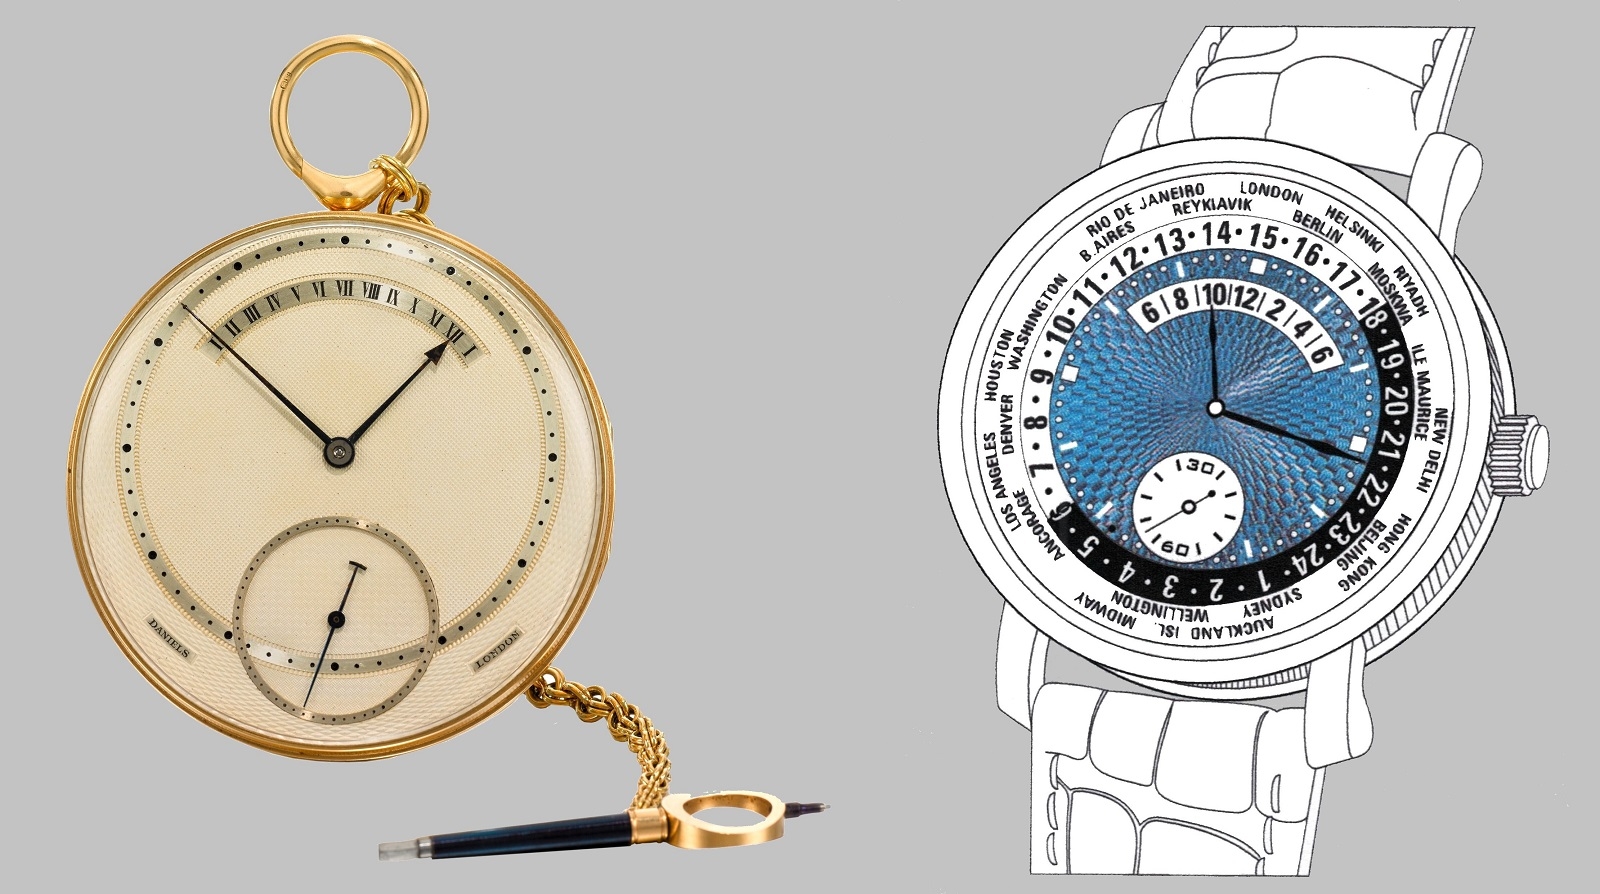 Cơ chế retrograde là một sáng tạo của người thợ chế tác đồng hồ vĩ đại George Daniels